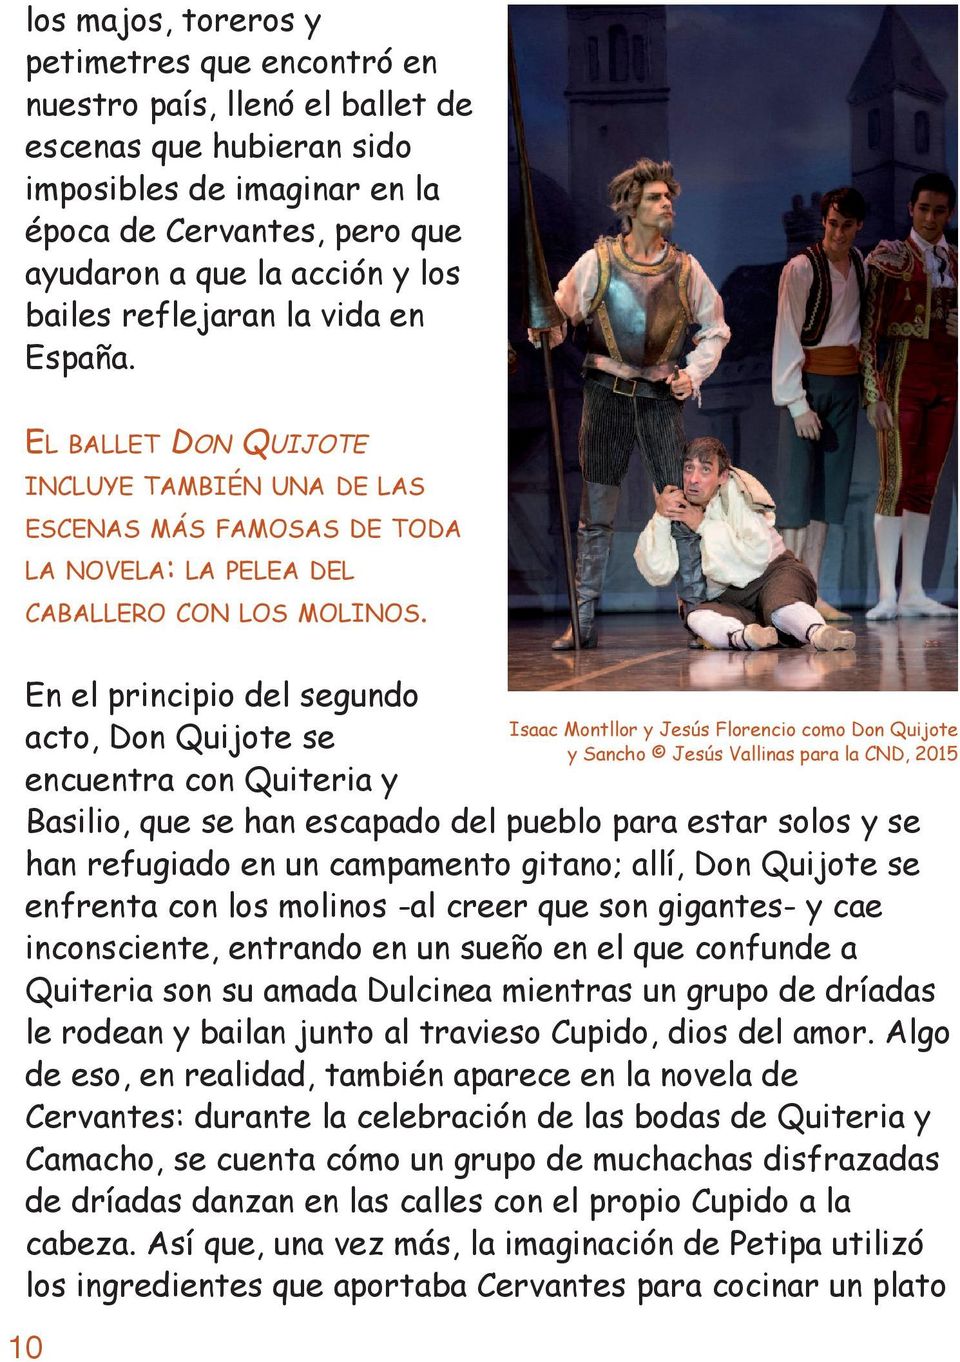 en el principio del segundo acto, Don Quijote se encuentra con Quiteria y Basilio, que se han escapado del pueblo para estar solos y se han refugiado en un campamento gitano; allí, Don Quijote se